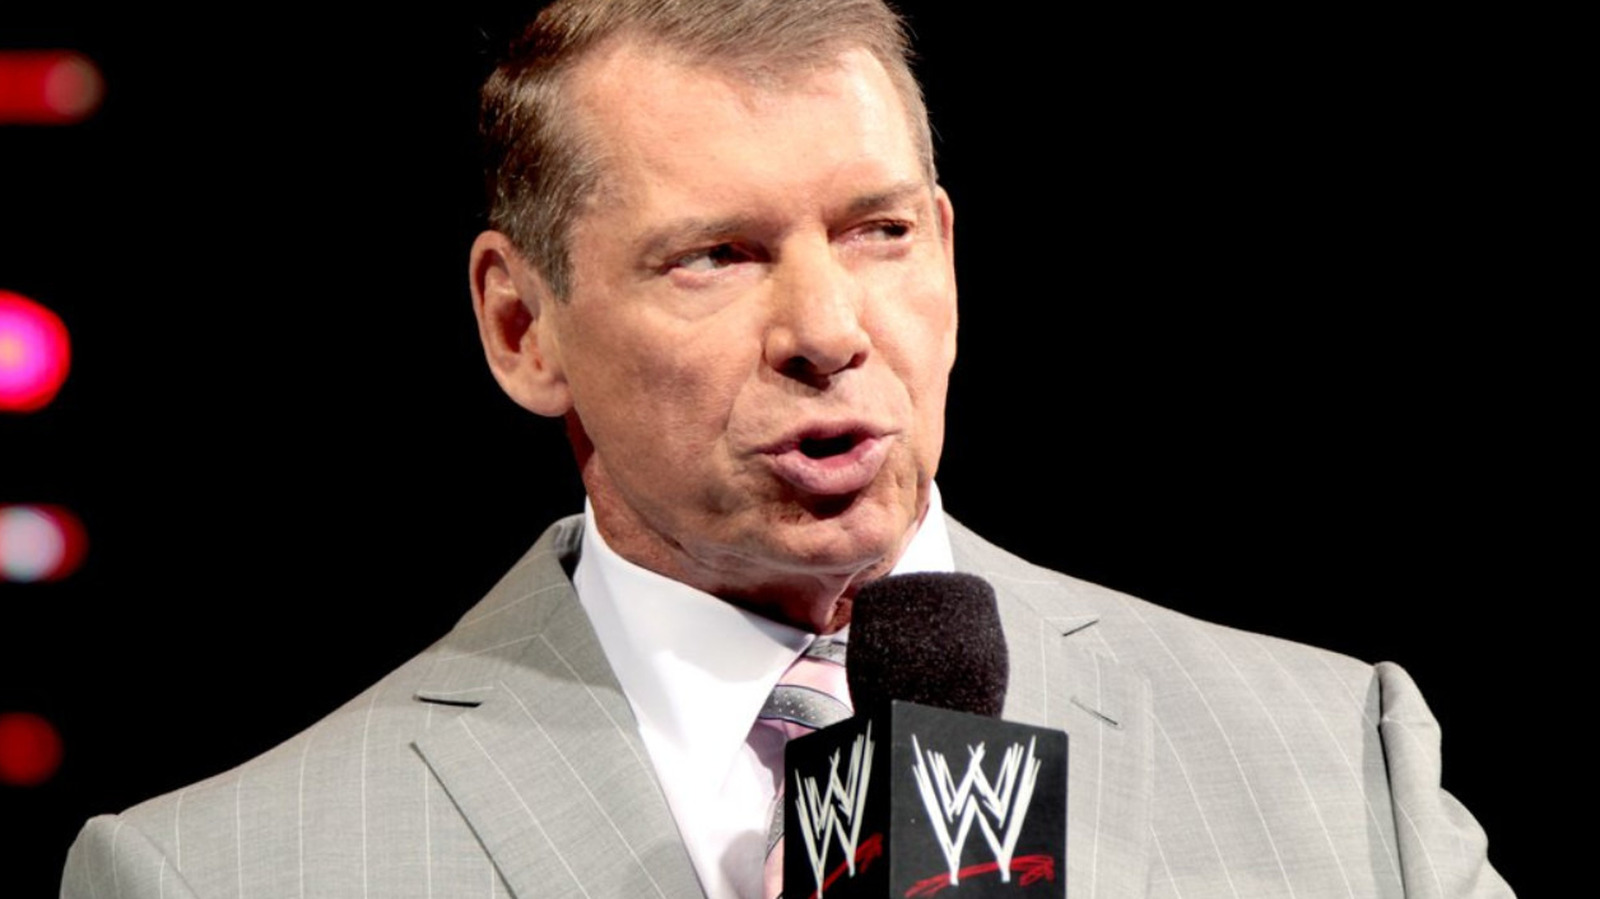 El nuevo contrato de WWE de Vince McMahon contiene una cláusula de código de conducta